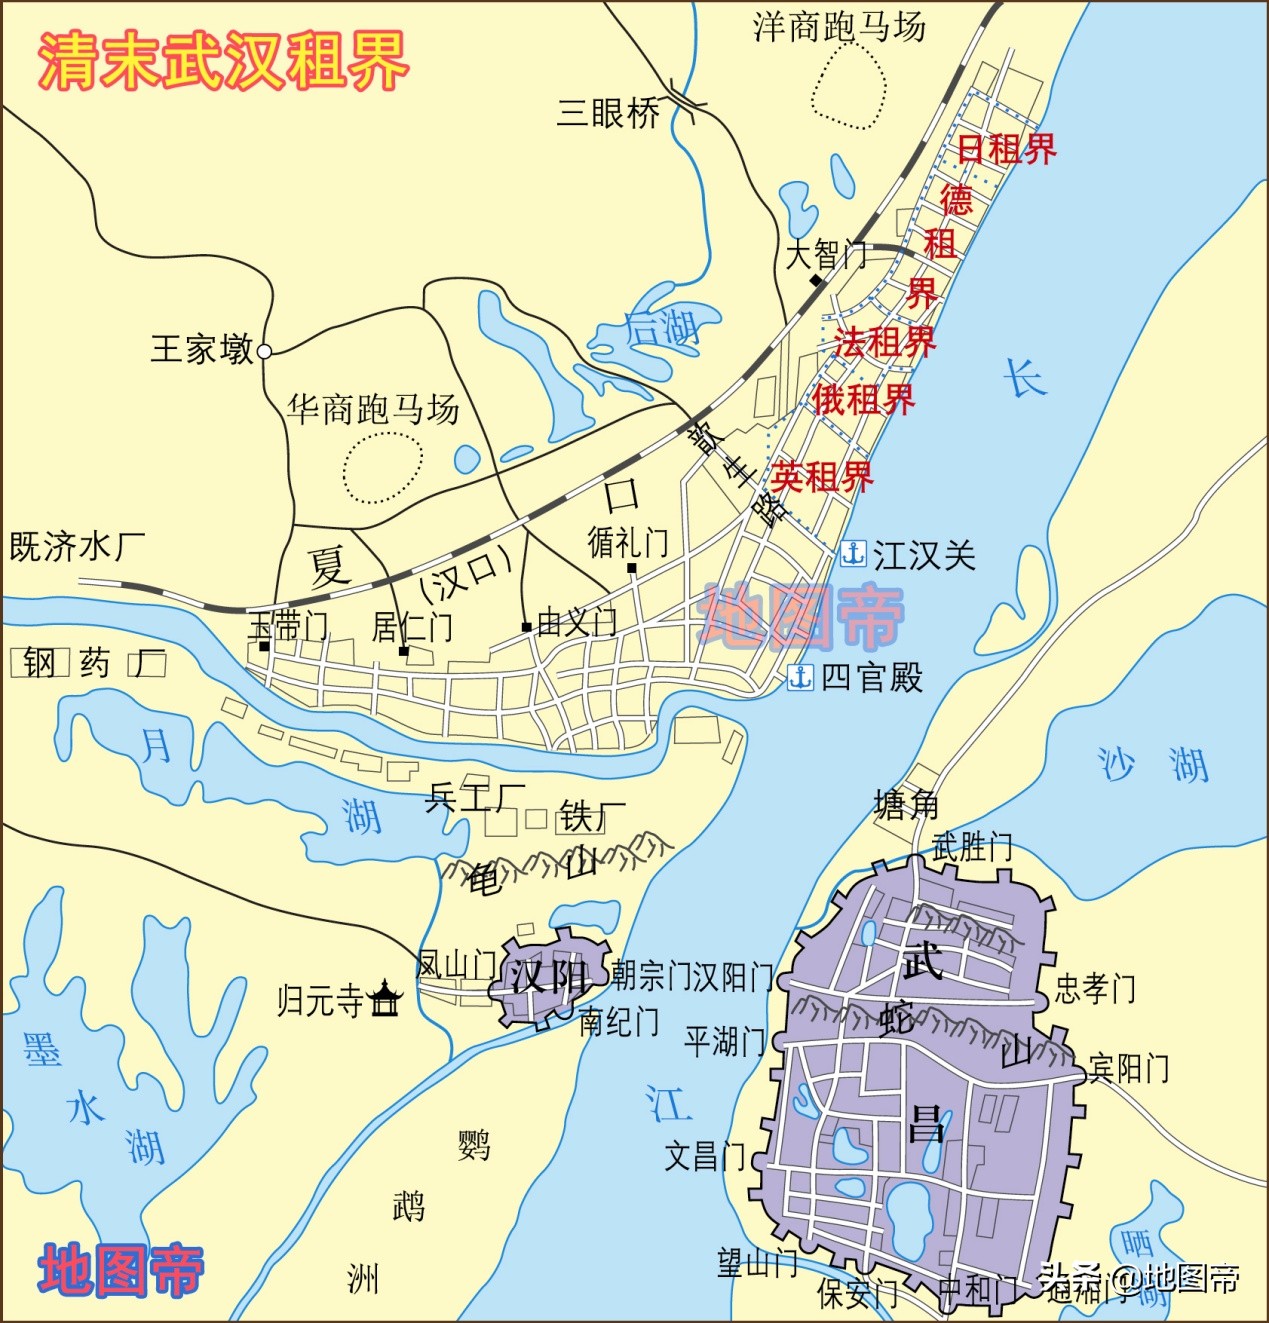 武昌是哪个省的城市(武汉有武昌区、汉阳区，为何没有汉口区？)